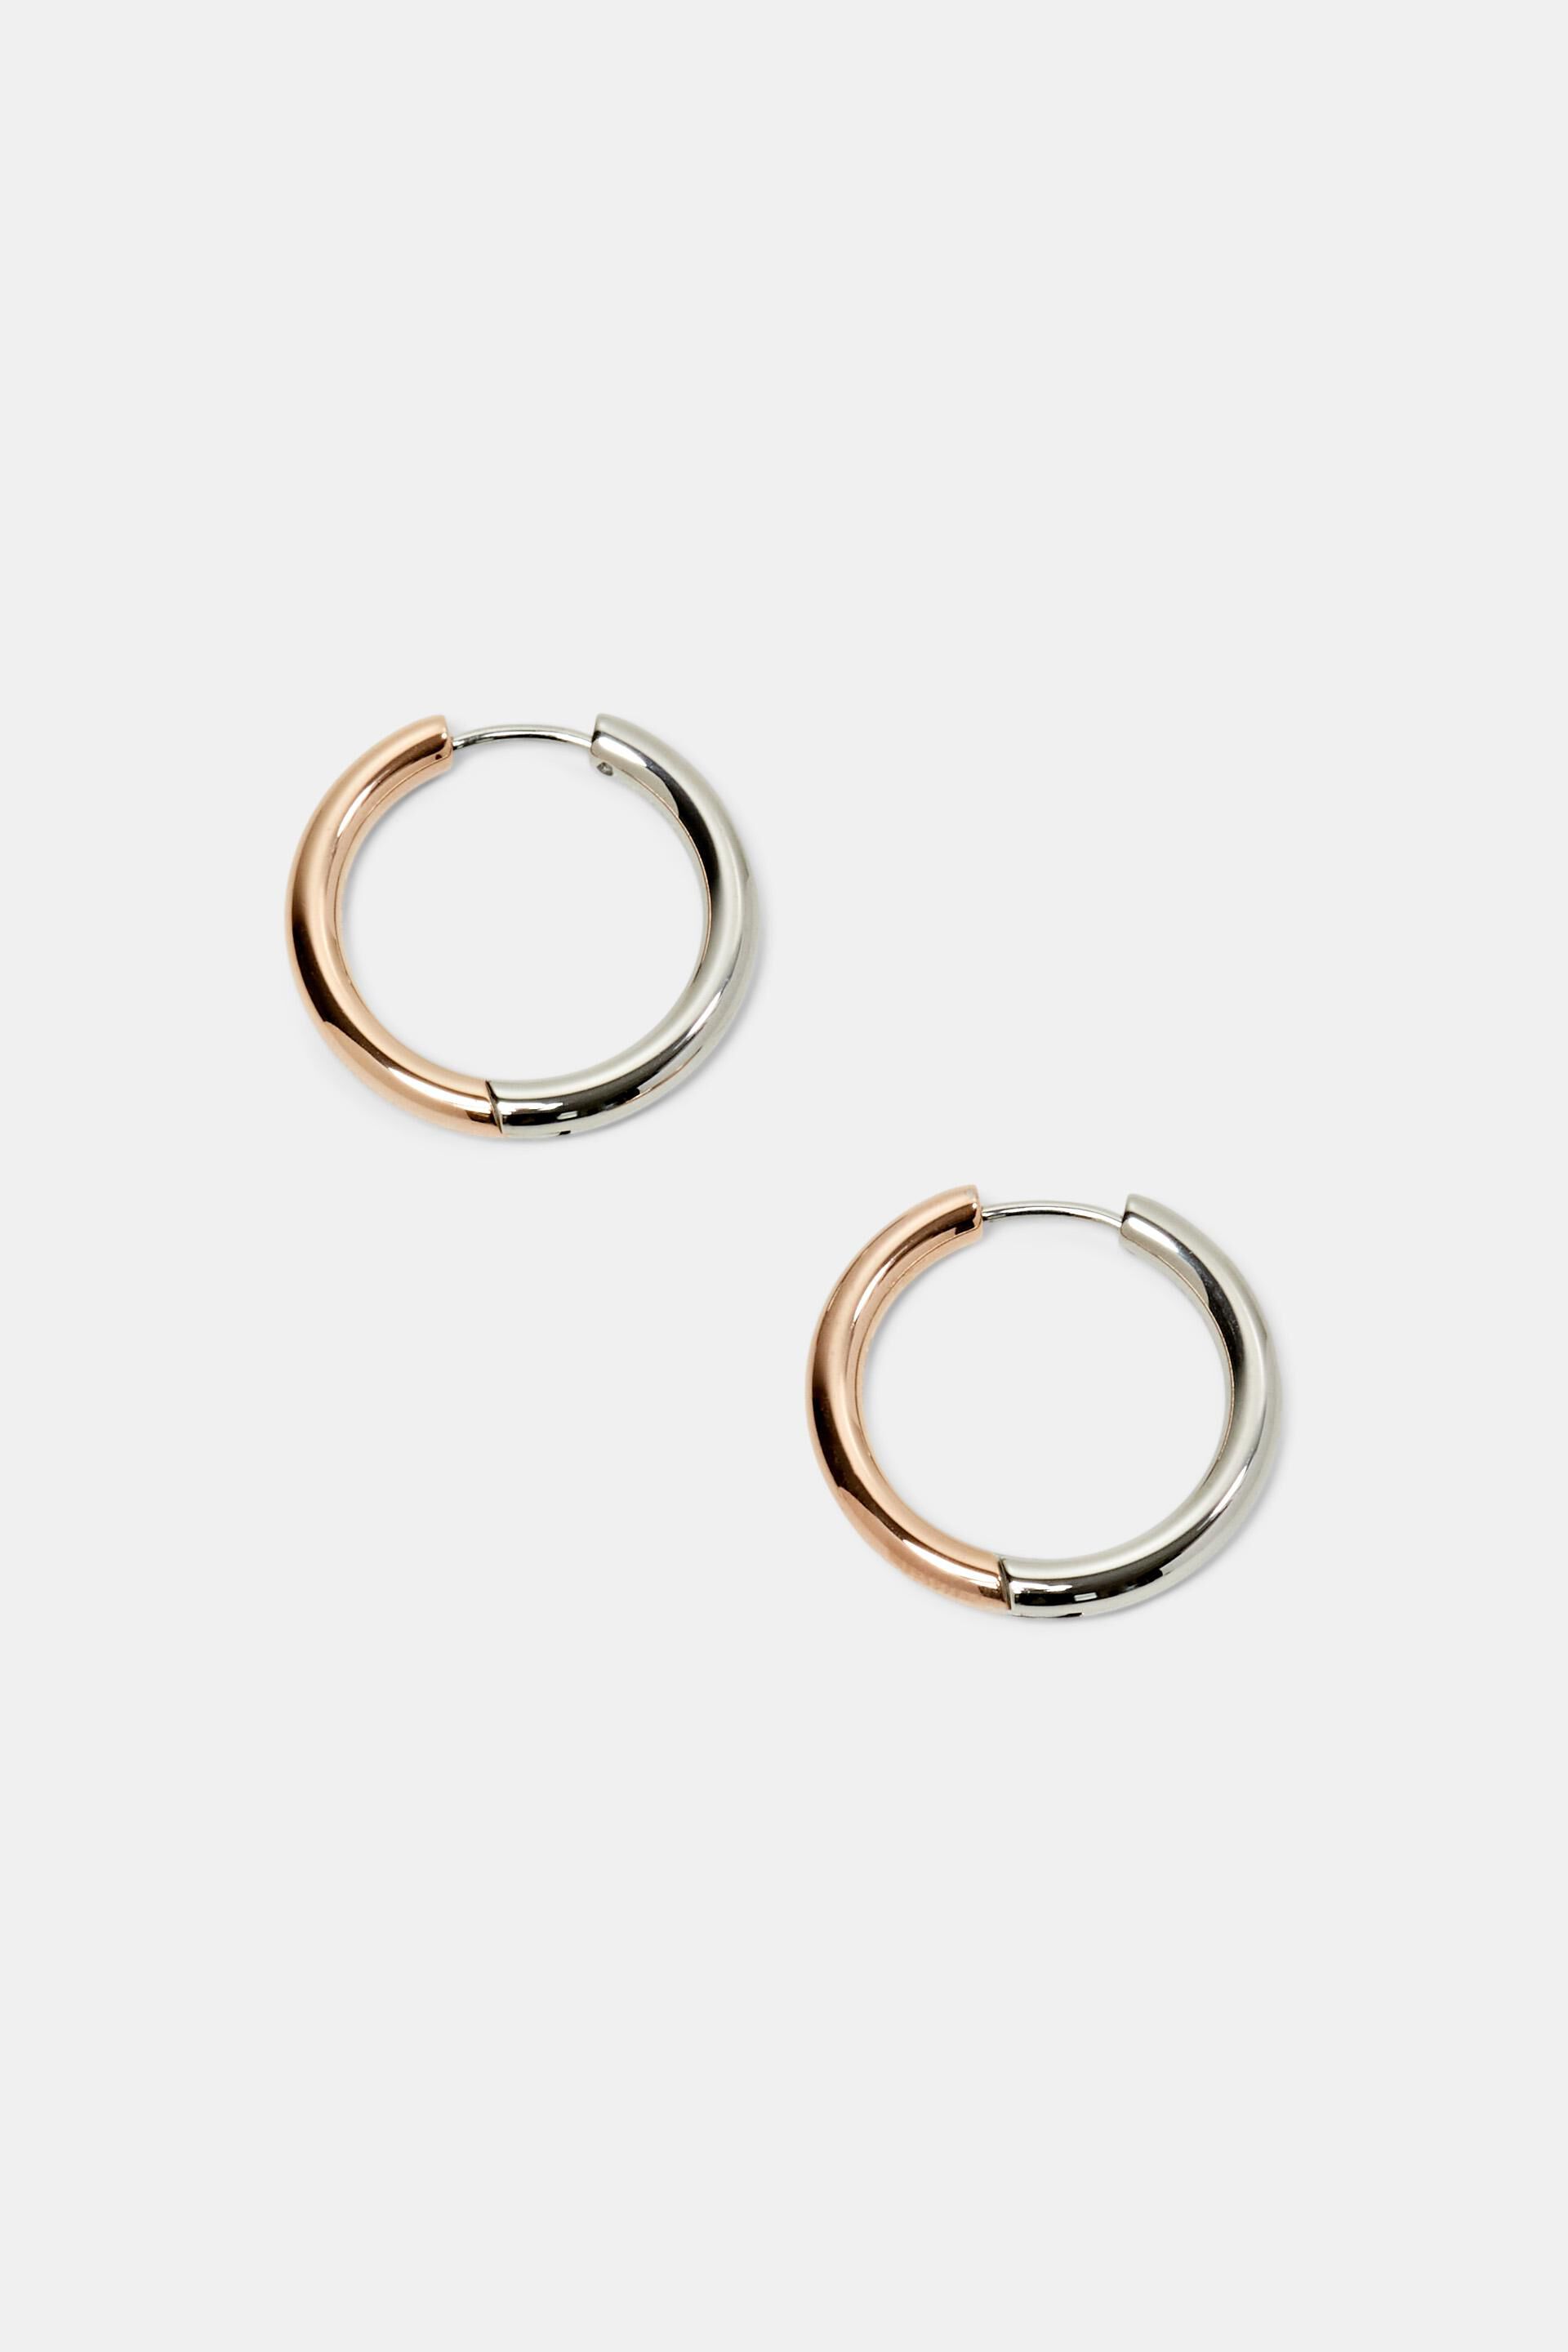 Esprit earrings, stainless steel Bi-color hoop